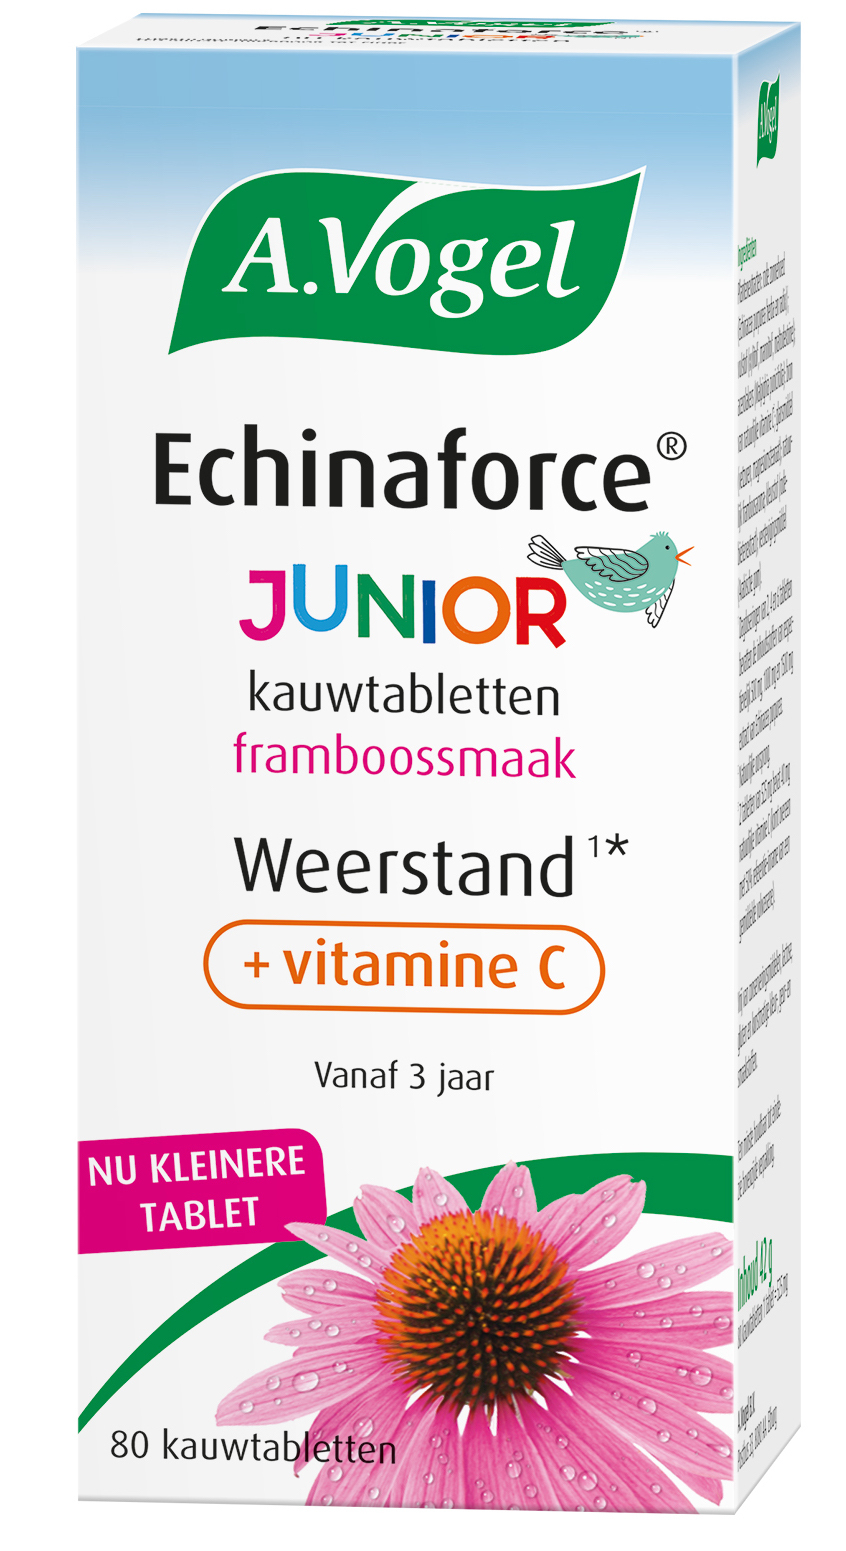 A.Vogel Echinaforce Junior + Vitamine C Kauwtabletten